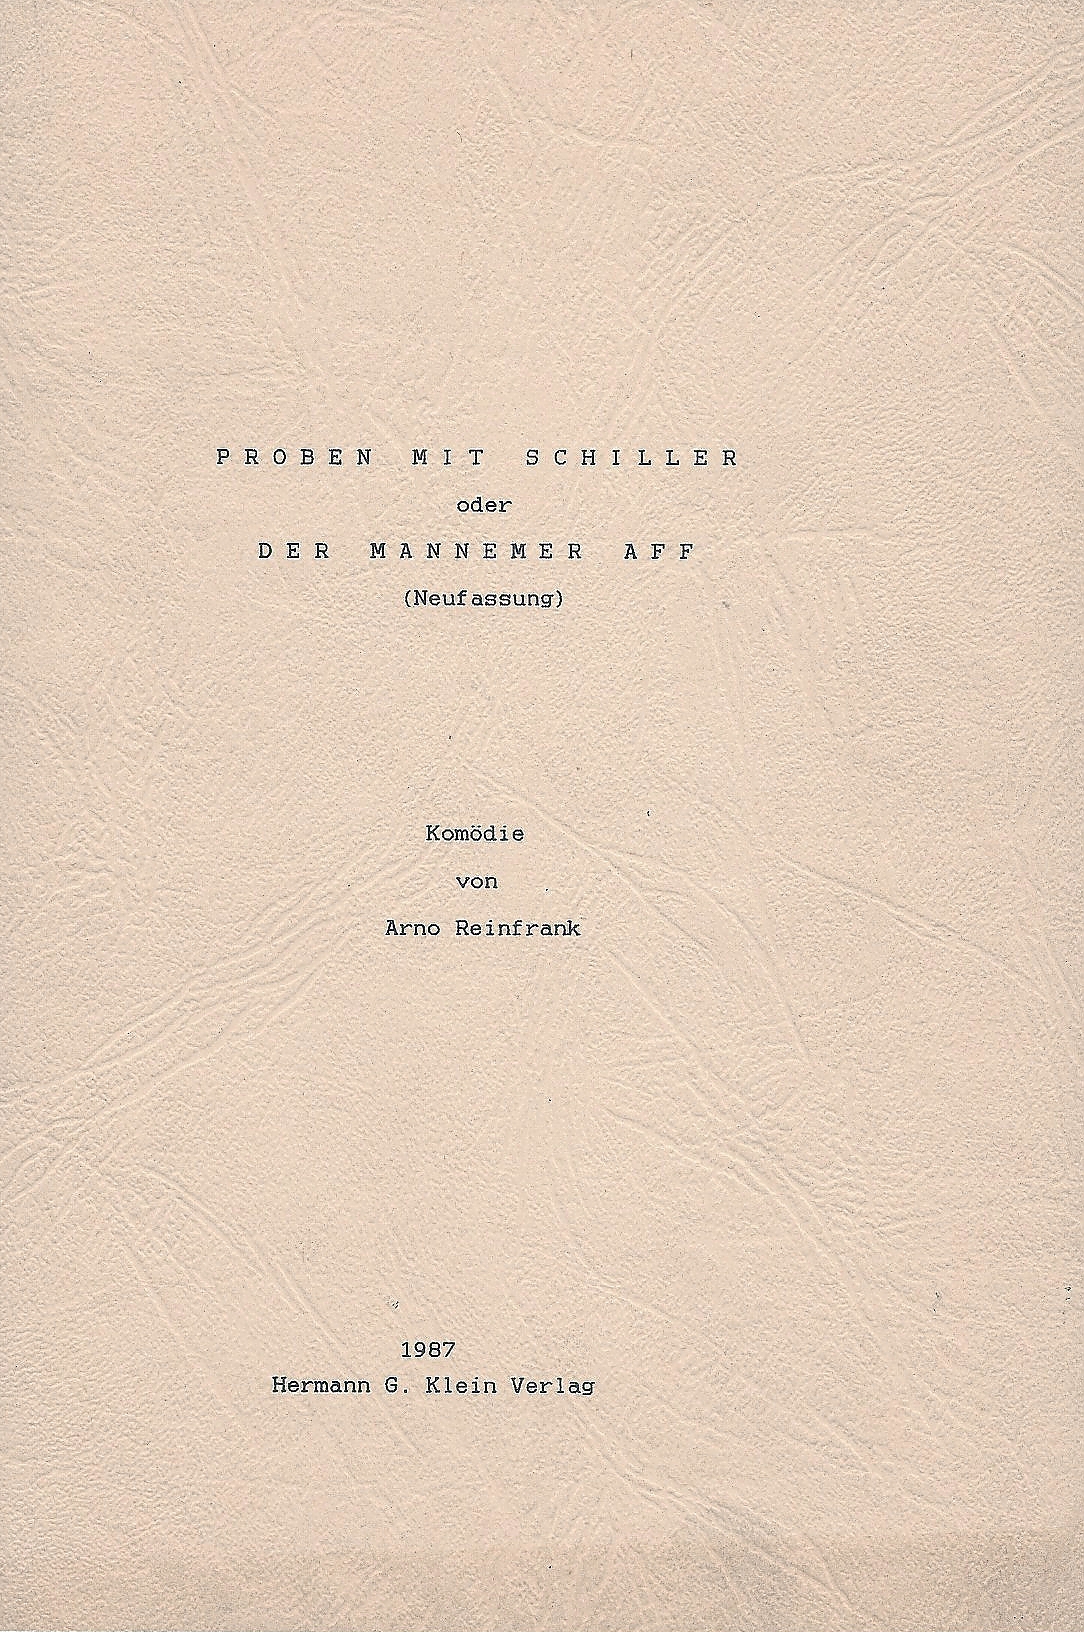 Arno Reinfrank|Proben mit Schiller|Hermann G. Klein Verlag|Speyer 1987